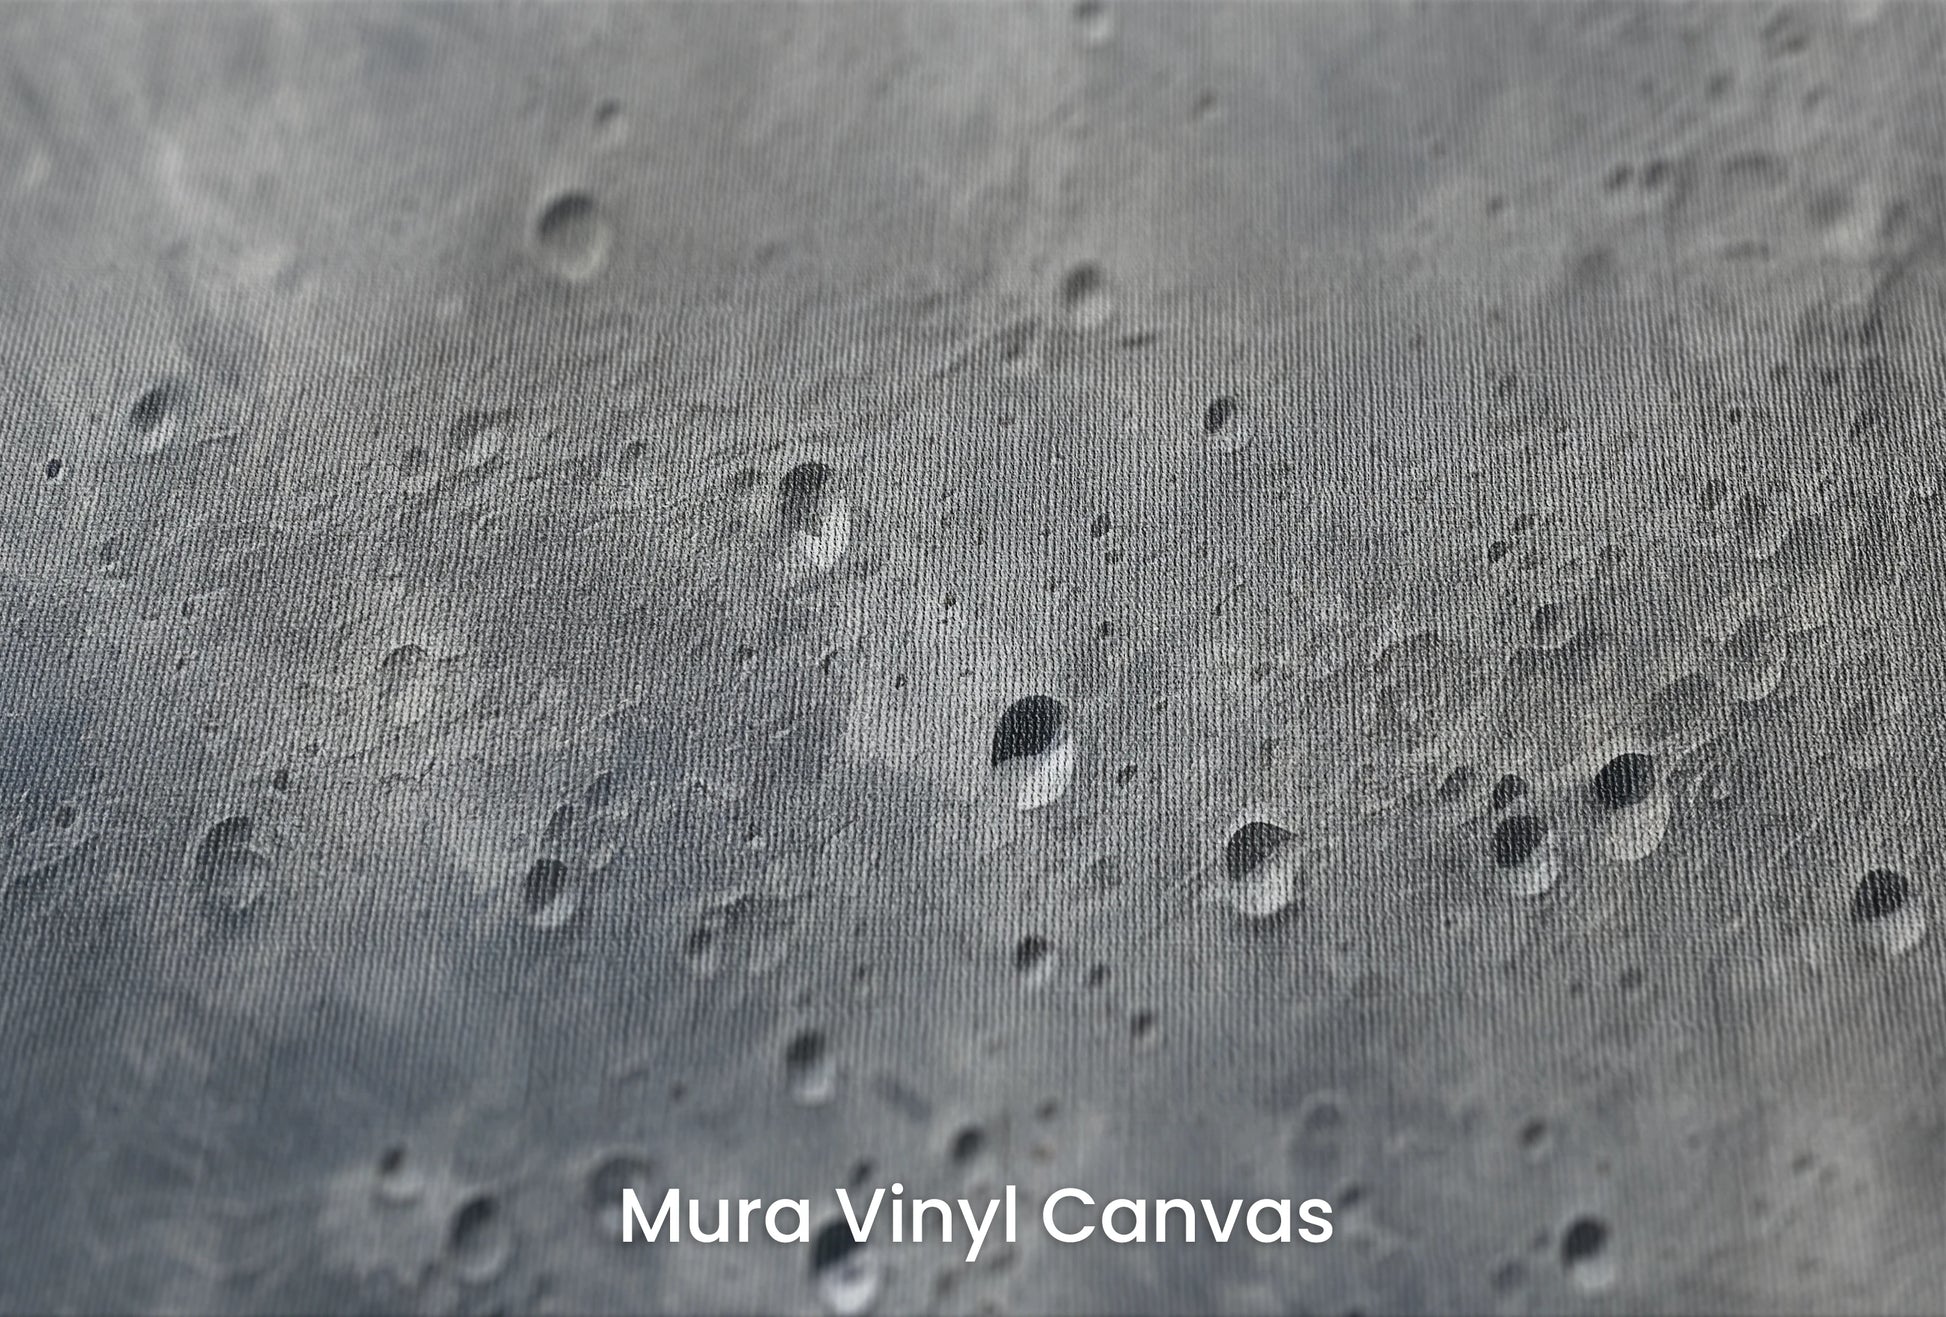 Zbliżenie na artystyczną fototapetę o nazwie Moon's Mystery na podłożu Mura Vinyl Canvas - faktura naturalnego płótna.